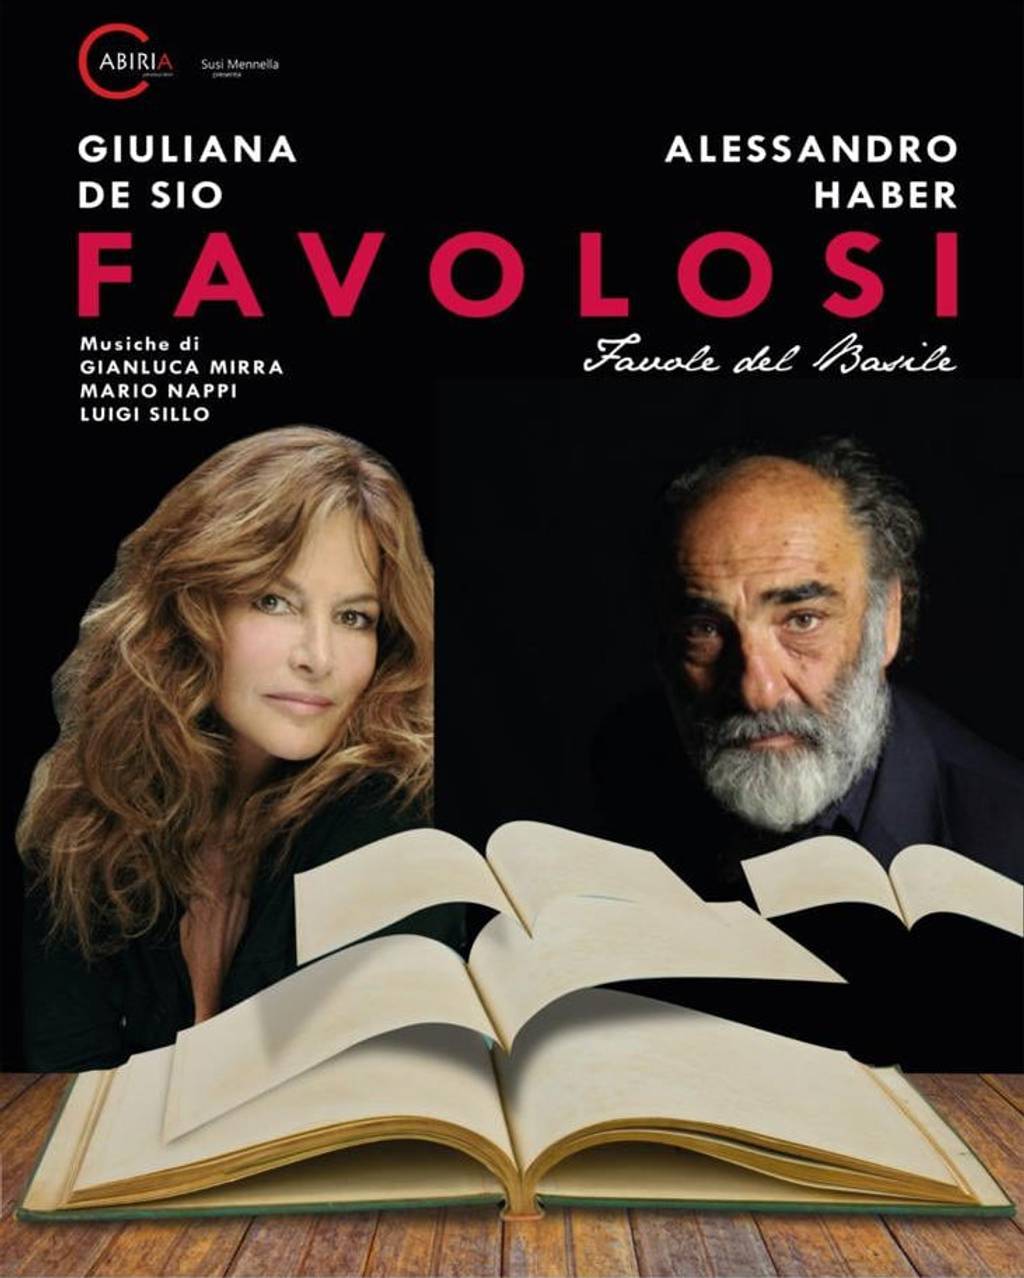 Giuliana de Sio e Alessandro Haber in Favolosi